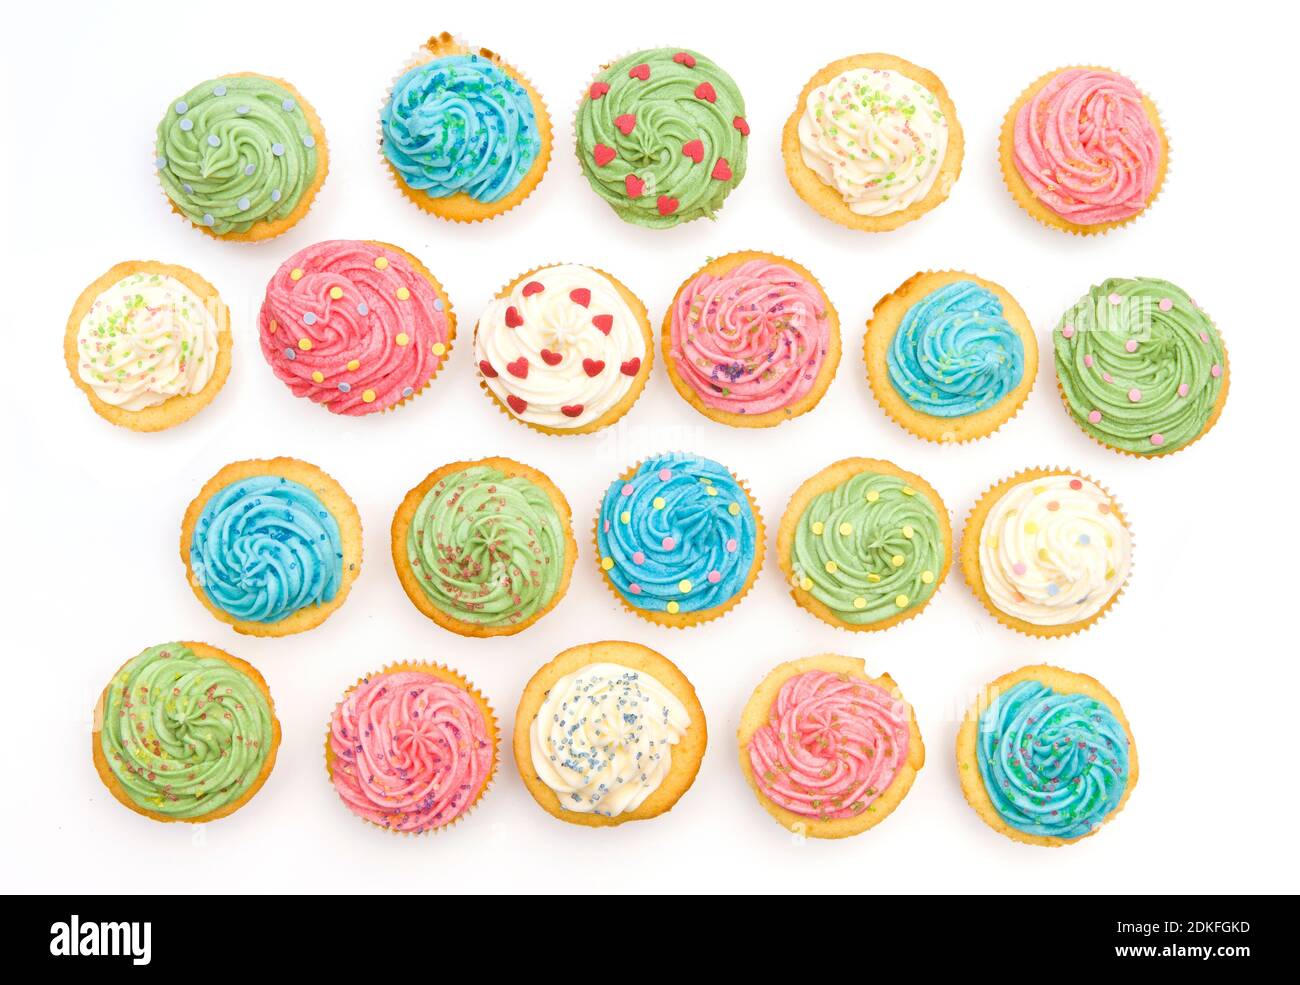 Liebevoll dekorierte Cupcakes mit bunten Dekorationen Stockfoto